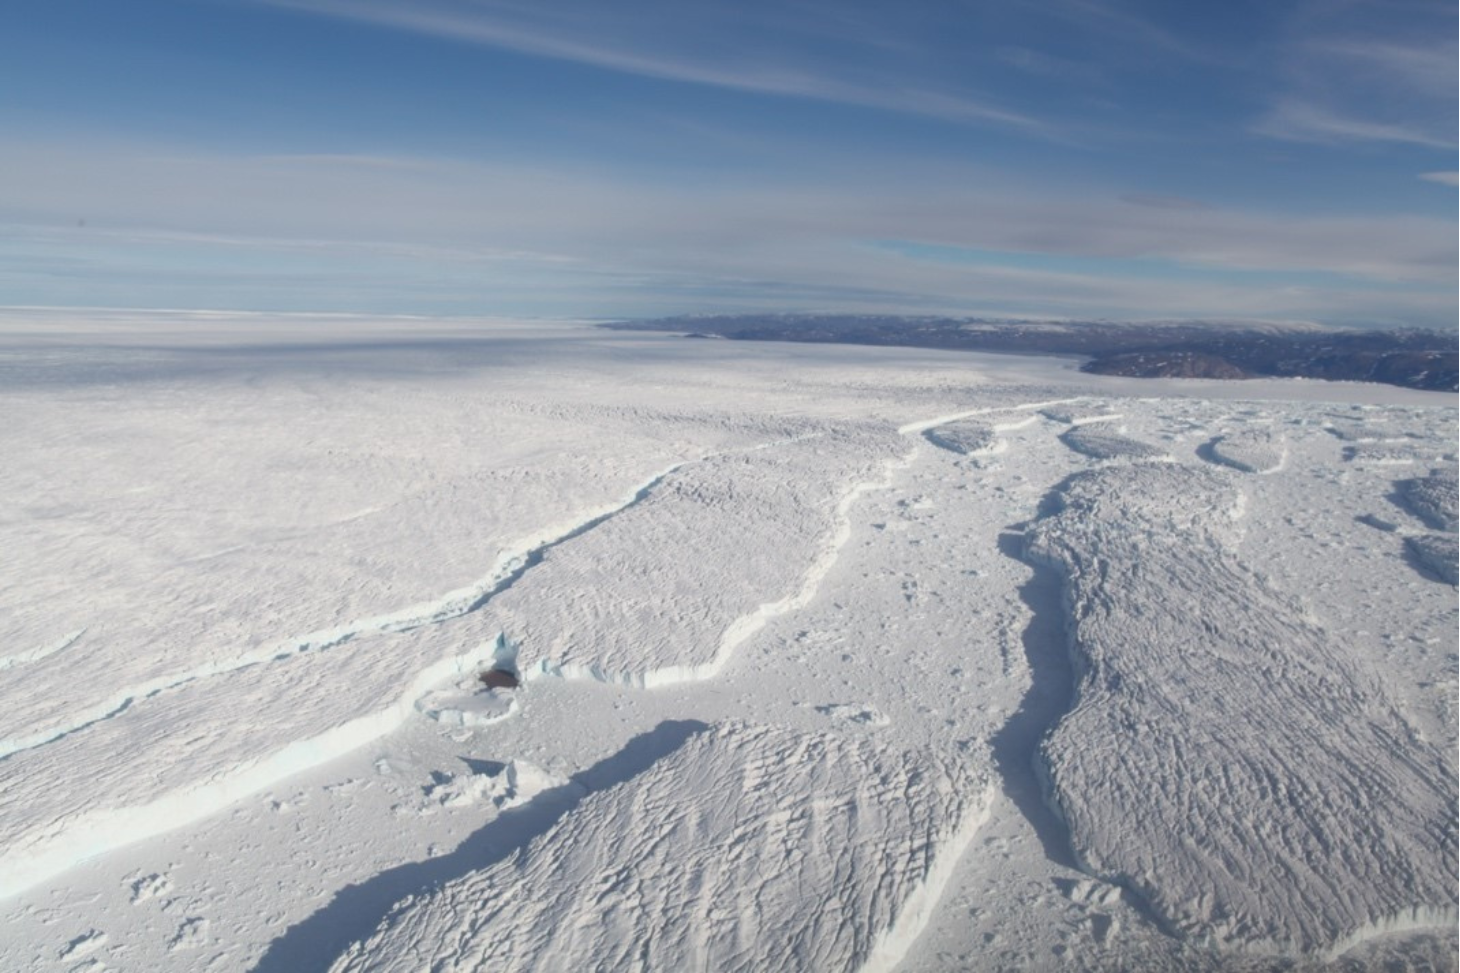 Le glacier Zachariæ Isstrøm en 2016, déchargeant des icebergs de plusieurs kilomètres de long dans l’océan. La fonte des plateformes du nord du Groenland pourrait participer significativement à l’augmentation du niveau marin.  © Romain Millan